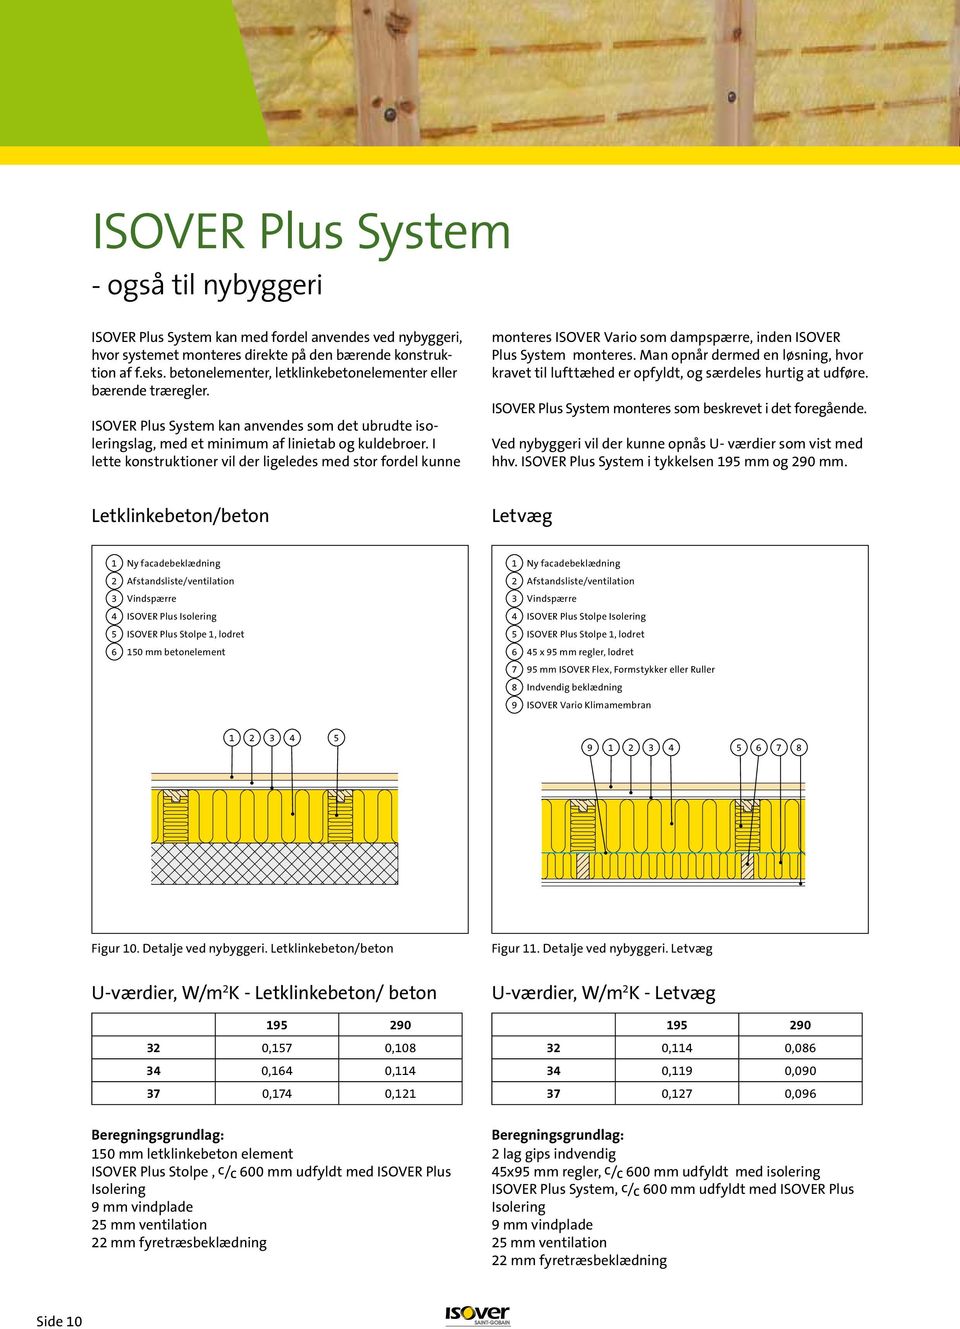 I lette konstruktioner vil der ligeledes med stor fordel kunne monteres ISOVER Vario som dampspærre, inden ISOVER Plus System ISOVER monteres.